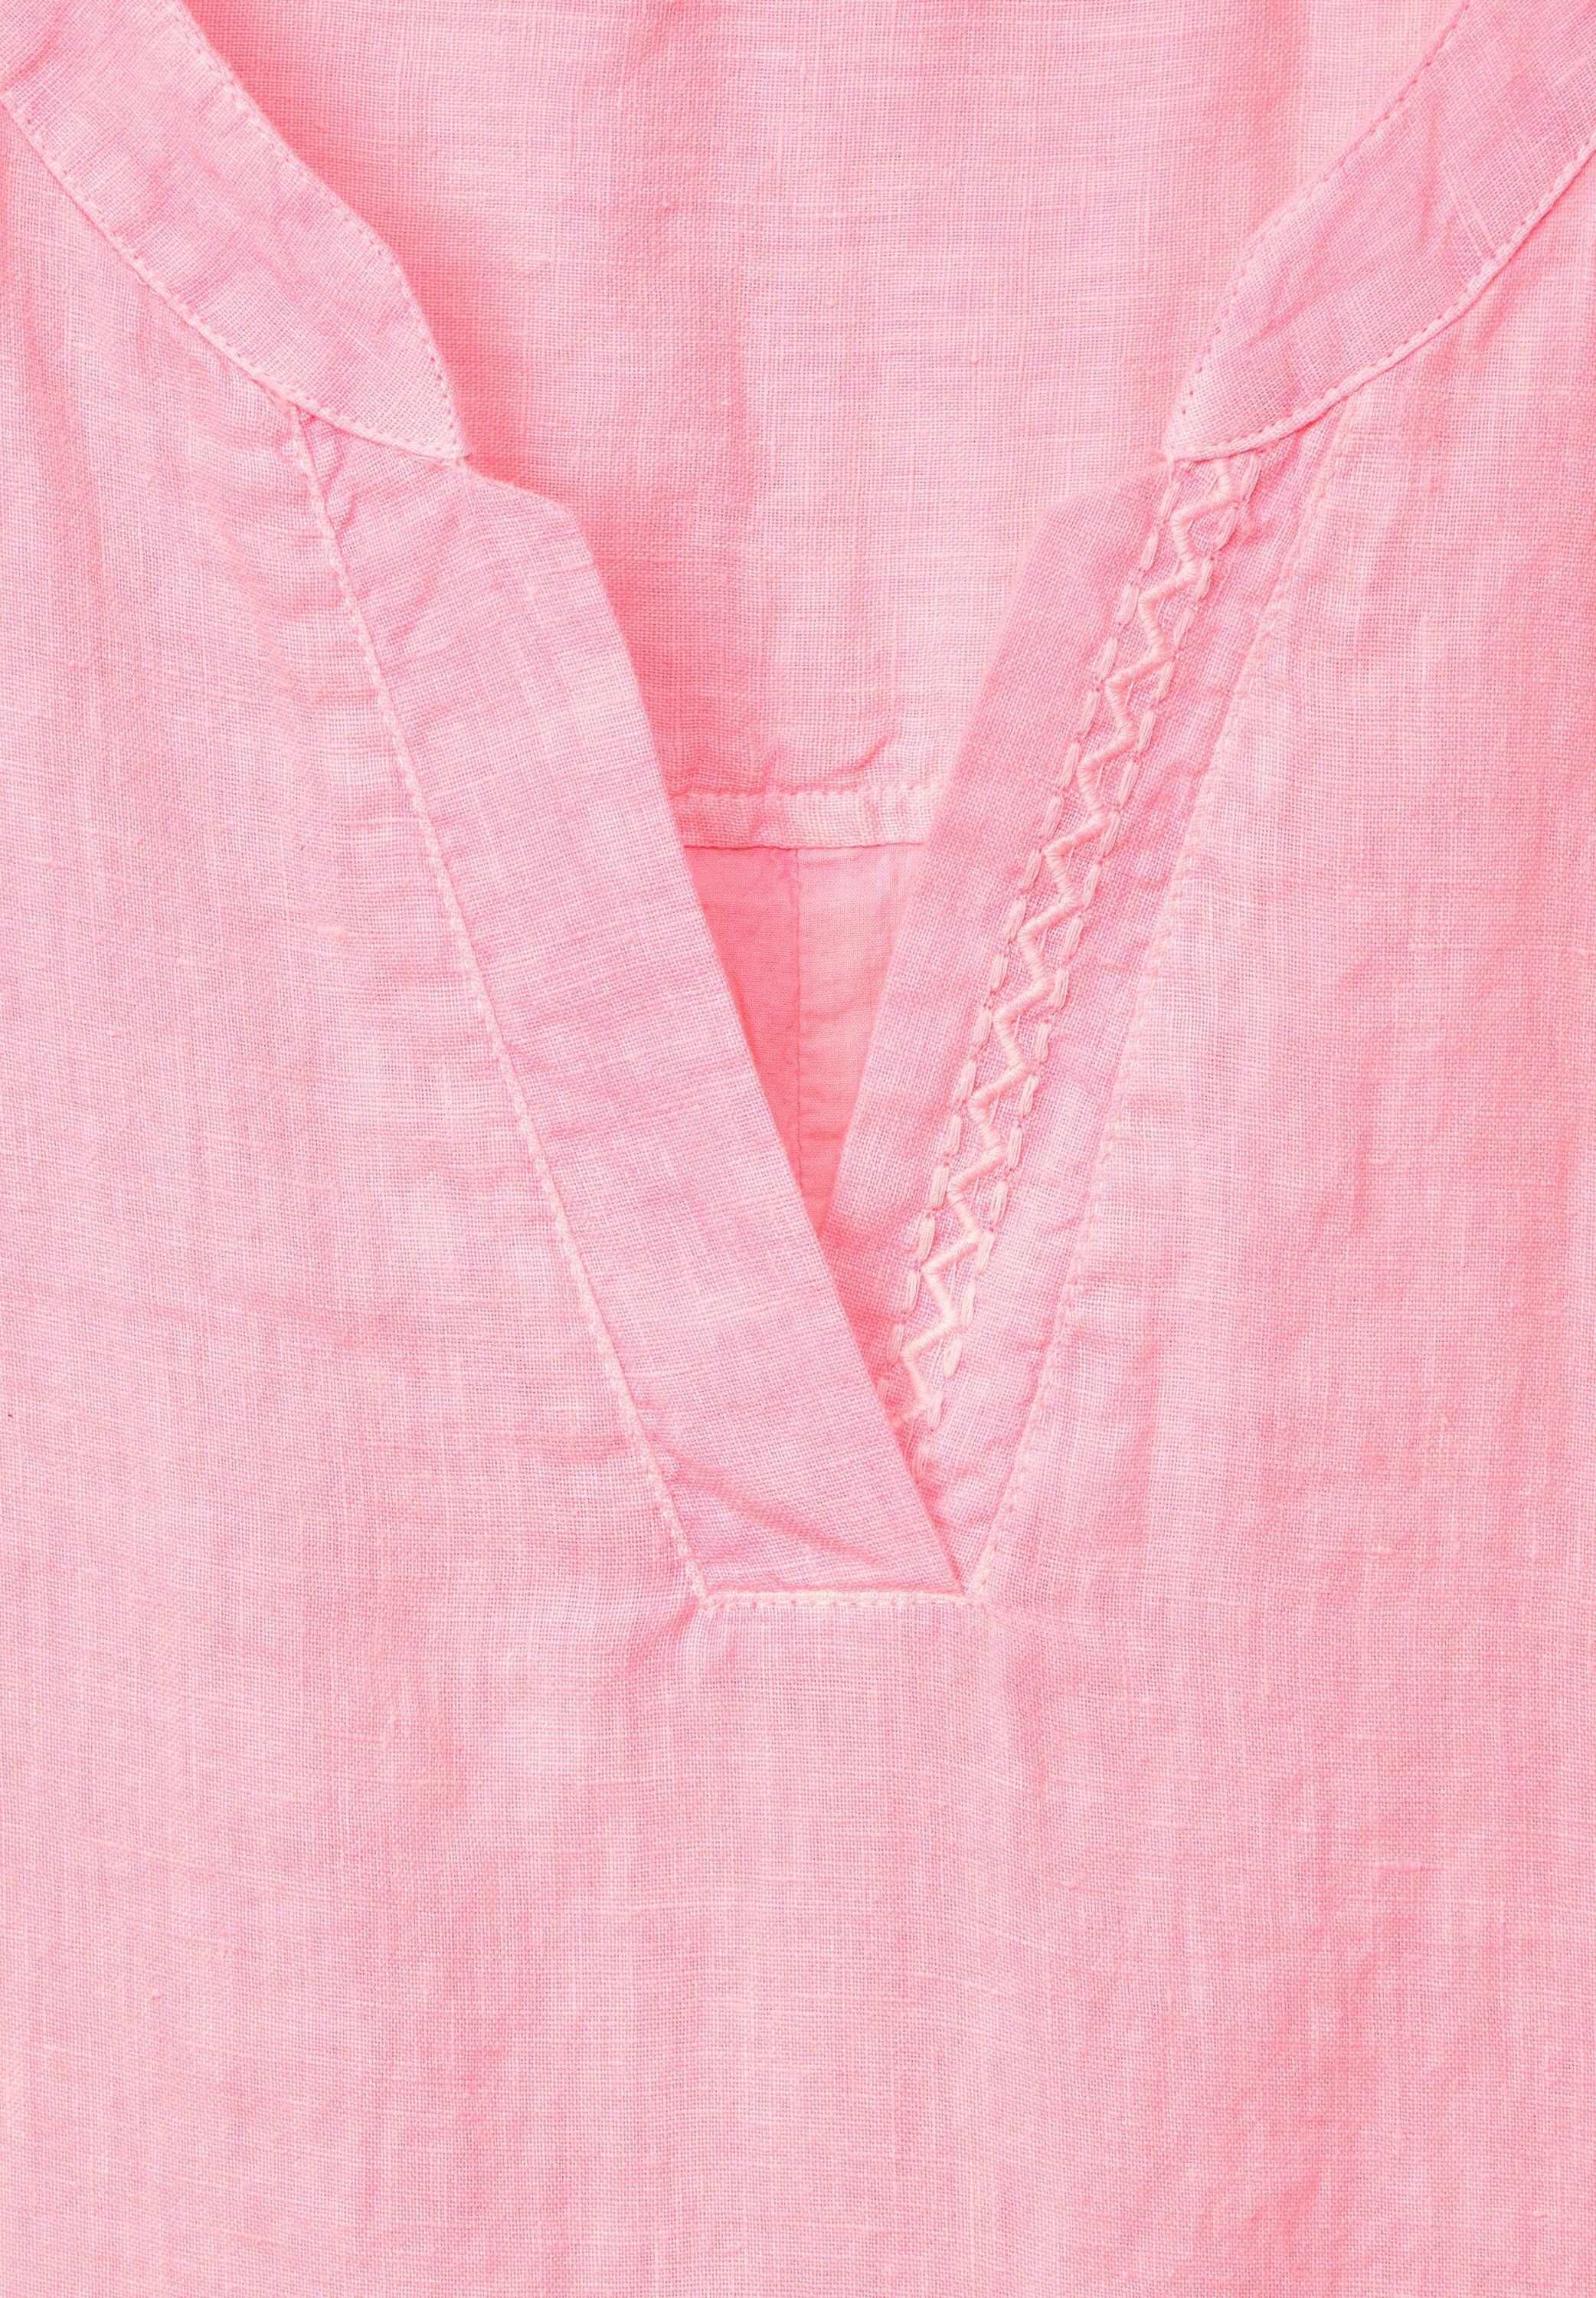 Cecil Strandkleid Leinen Kleid soft neon pink